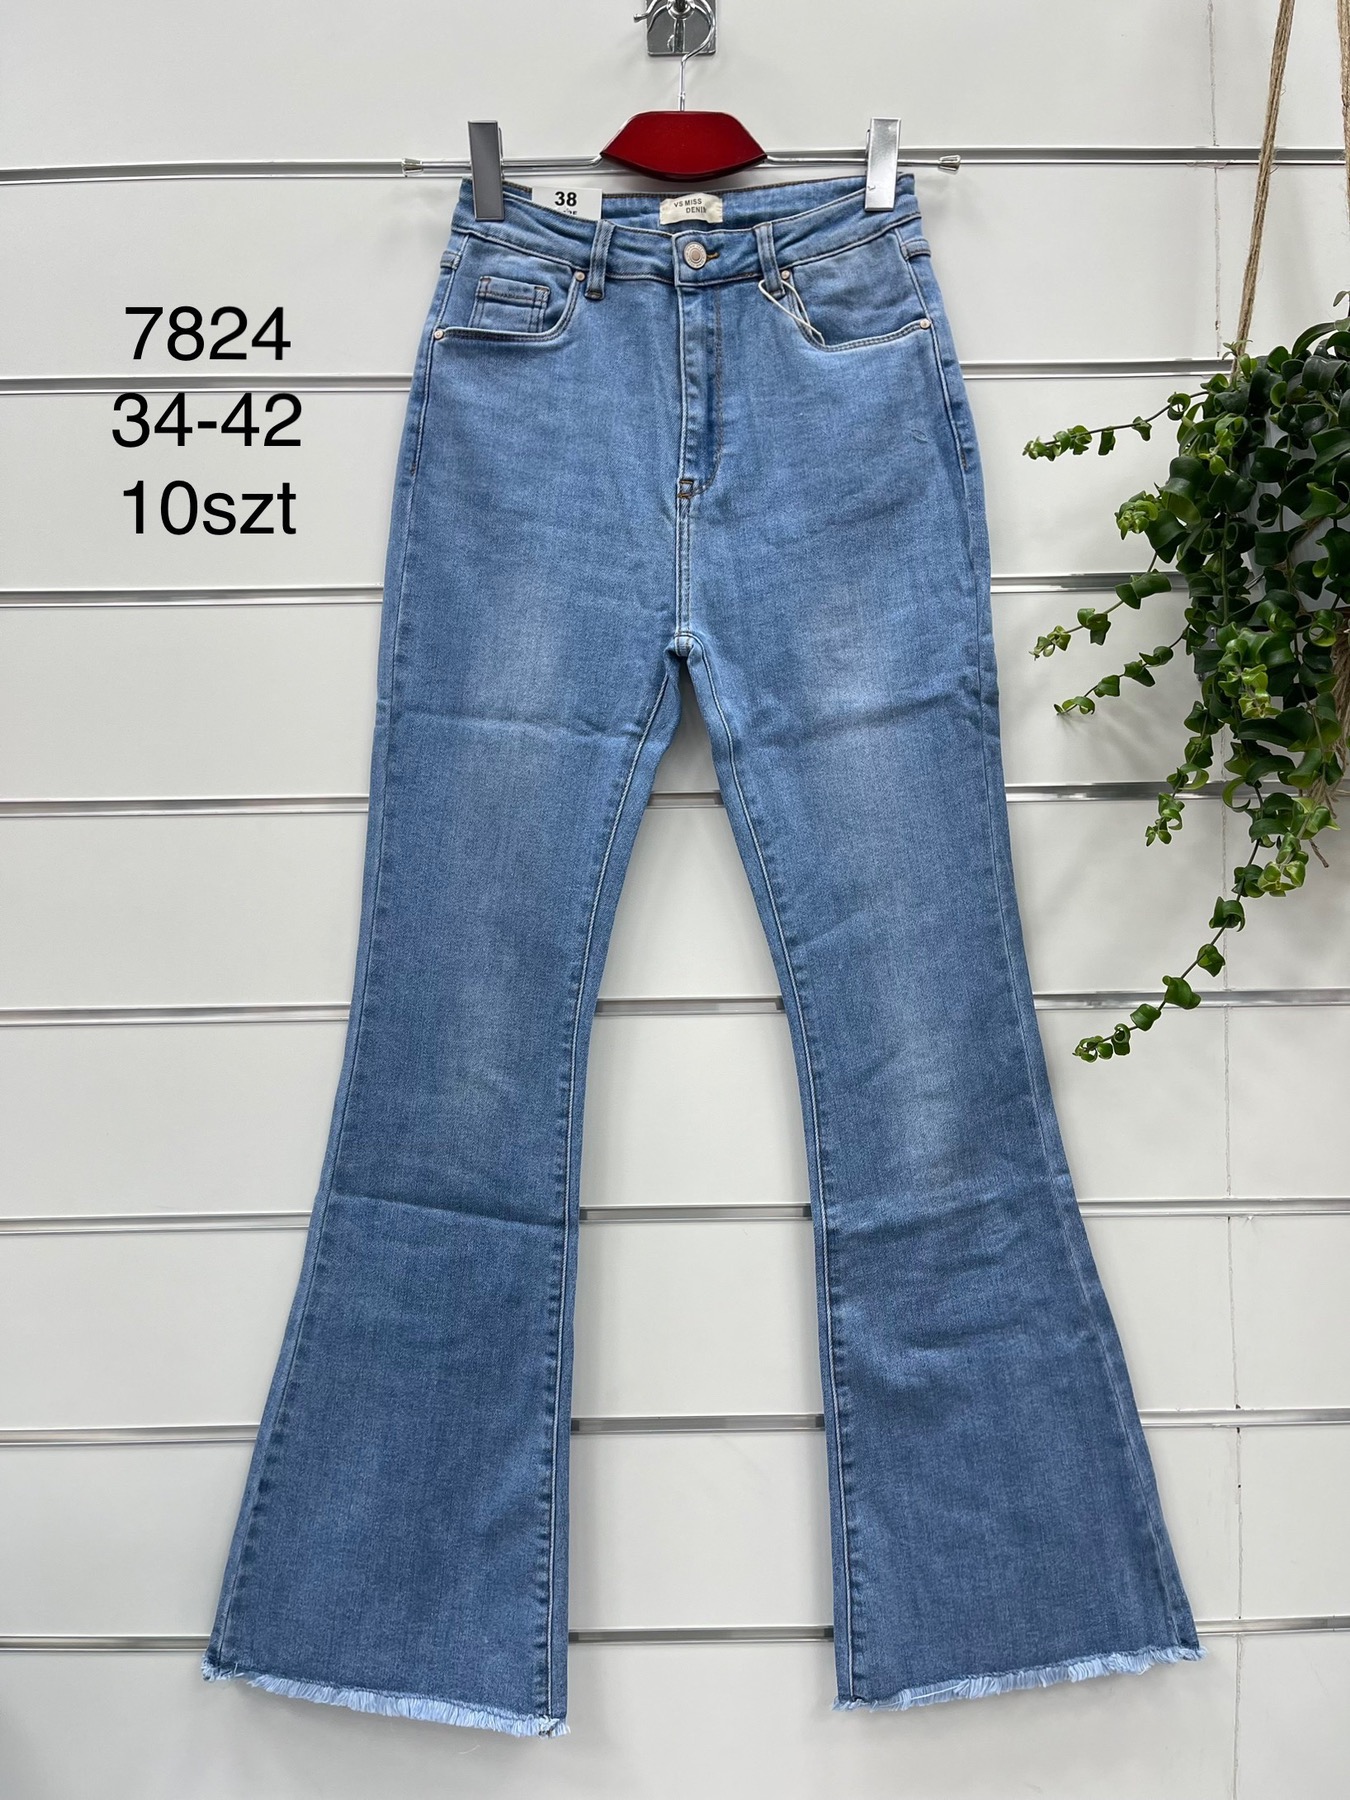 Spodnie  damskie jeans Roz 34-42  1 kolor . Paczka 10szt